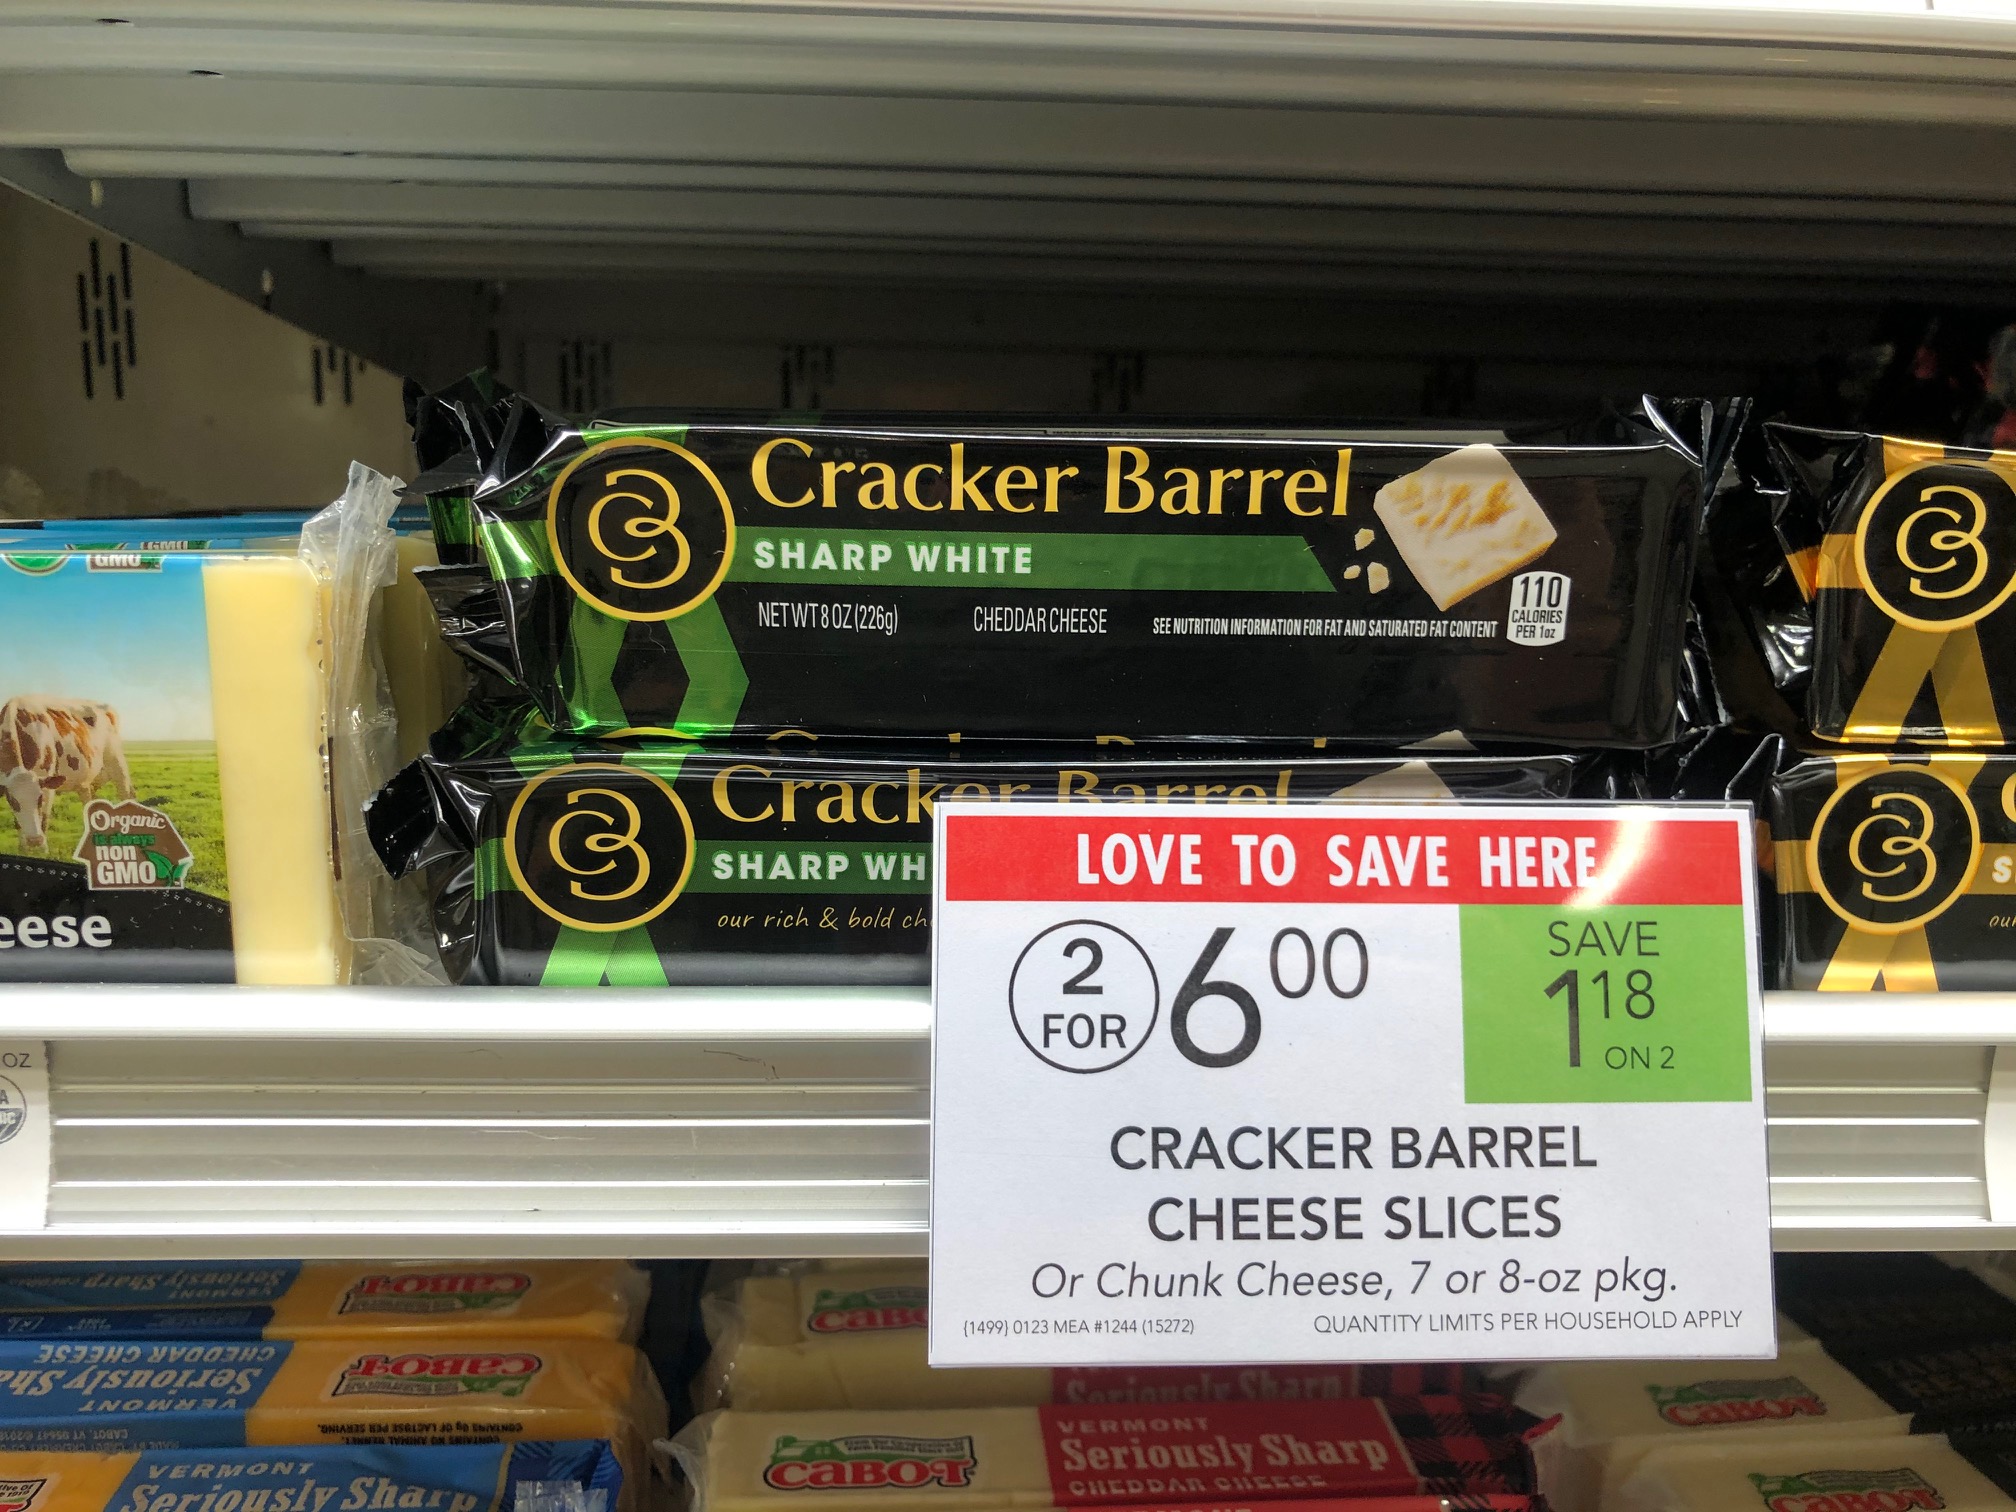 Grab Super Deals On Delicious Cracker Barrel Cheese At Publix - Cracker Cut or Cubes Just $1 on I Heart Publix